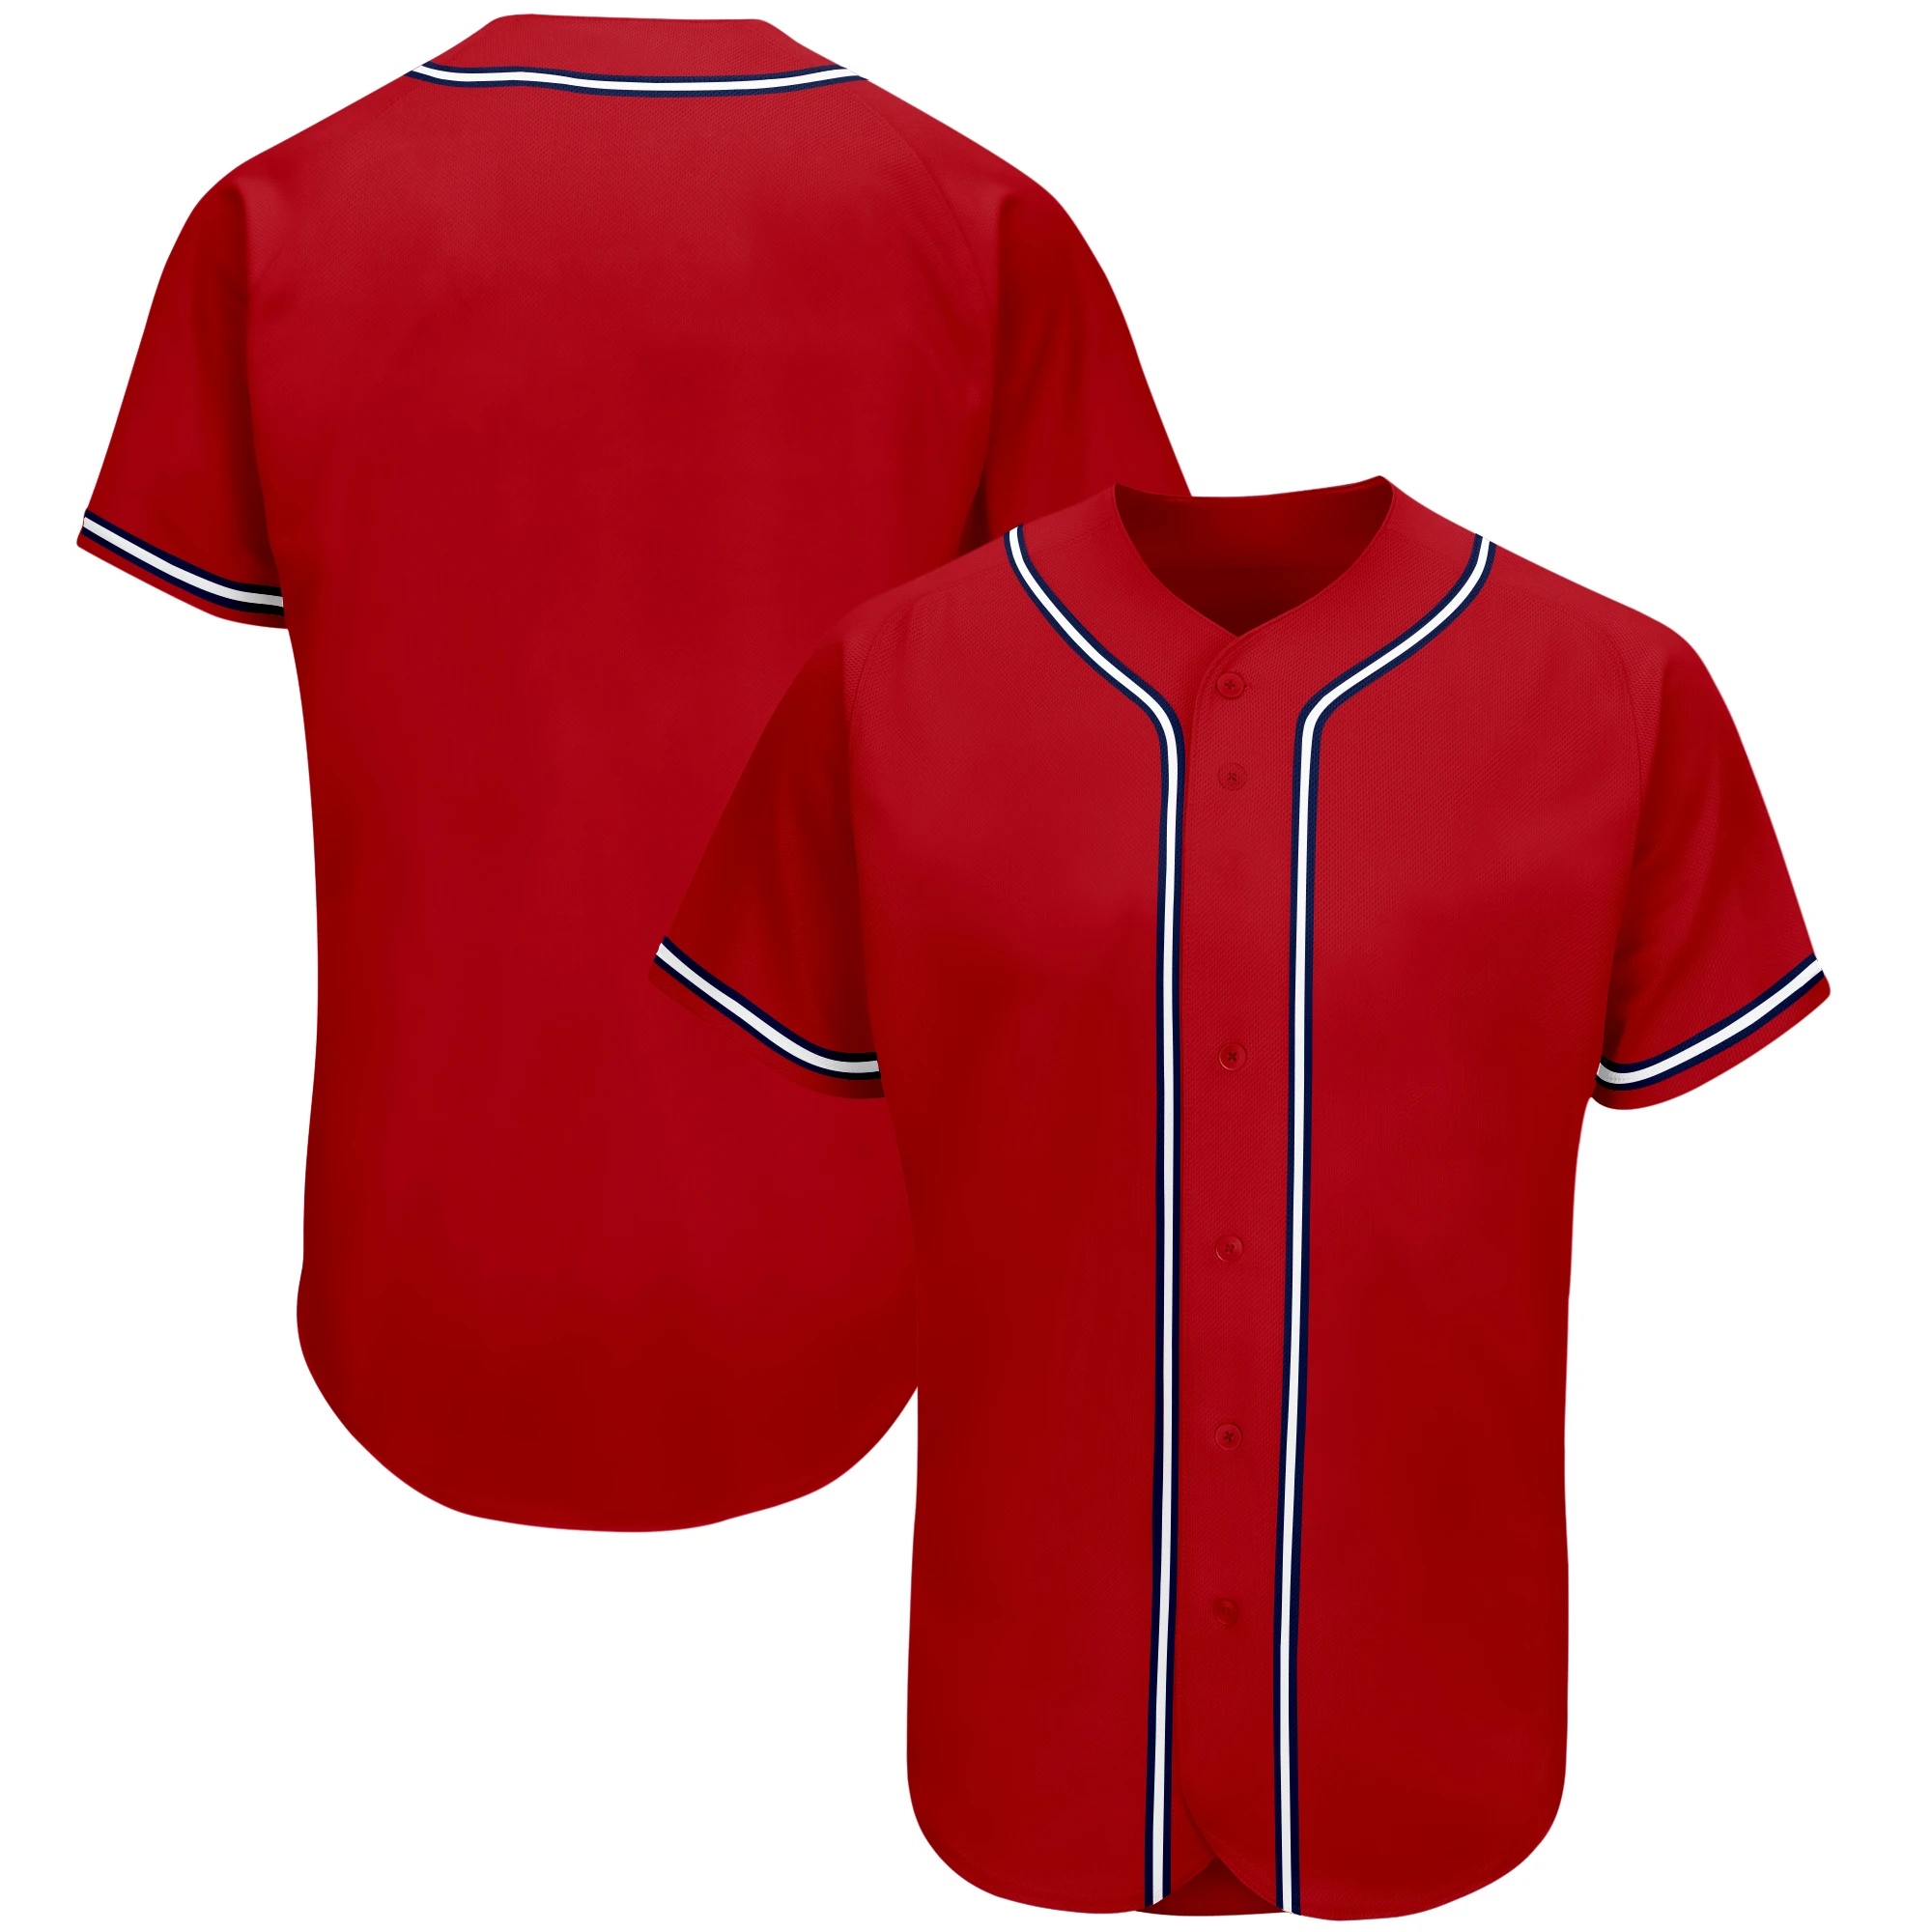 apotheek maat spuiten Team Blank Baseball Jersey Customized Personalize Men/women/kids Jerseys  Button Down Online Sport Shirts Playing - Baseball Jerseys - AliExpress